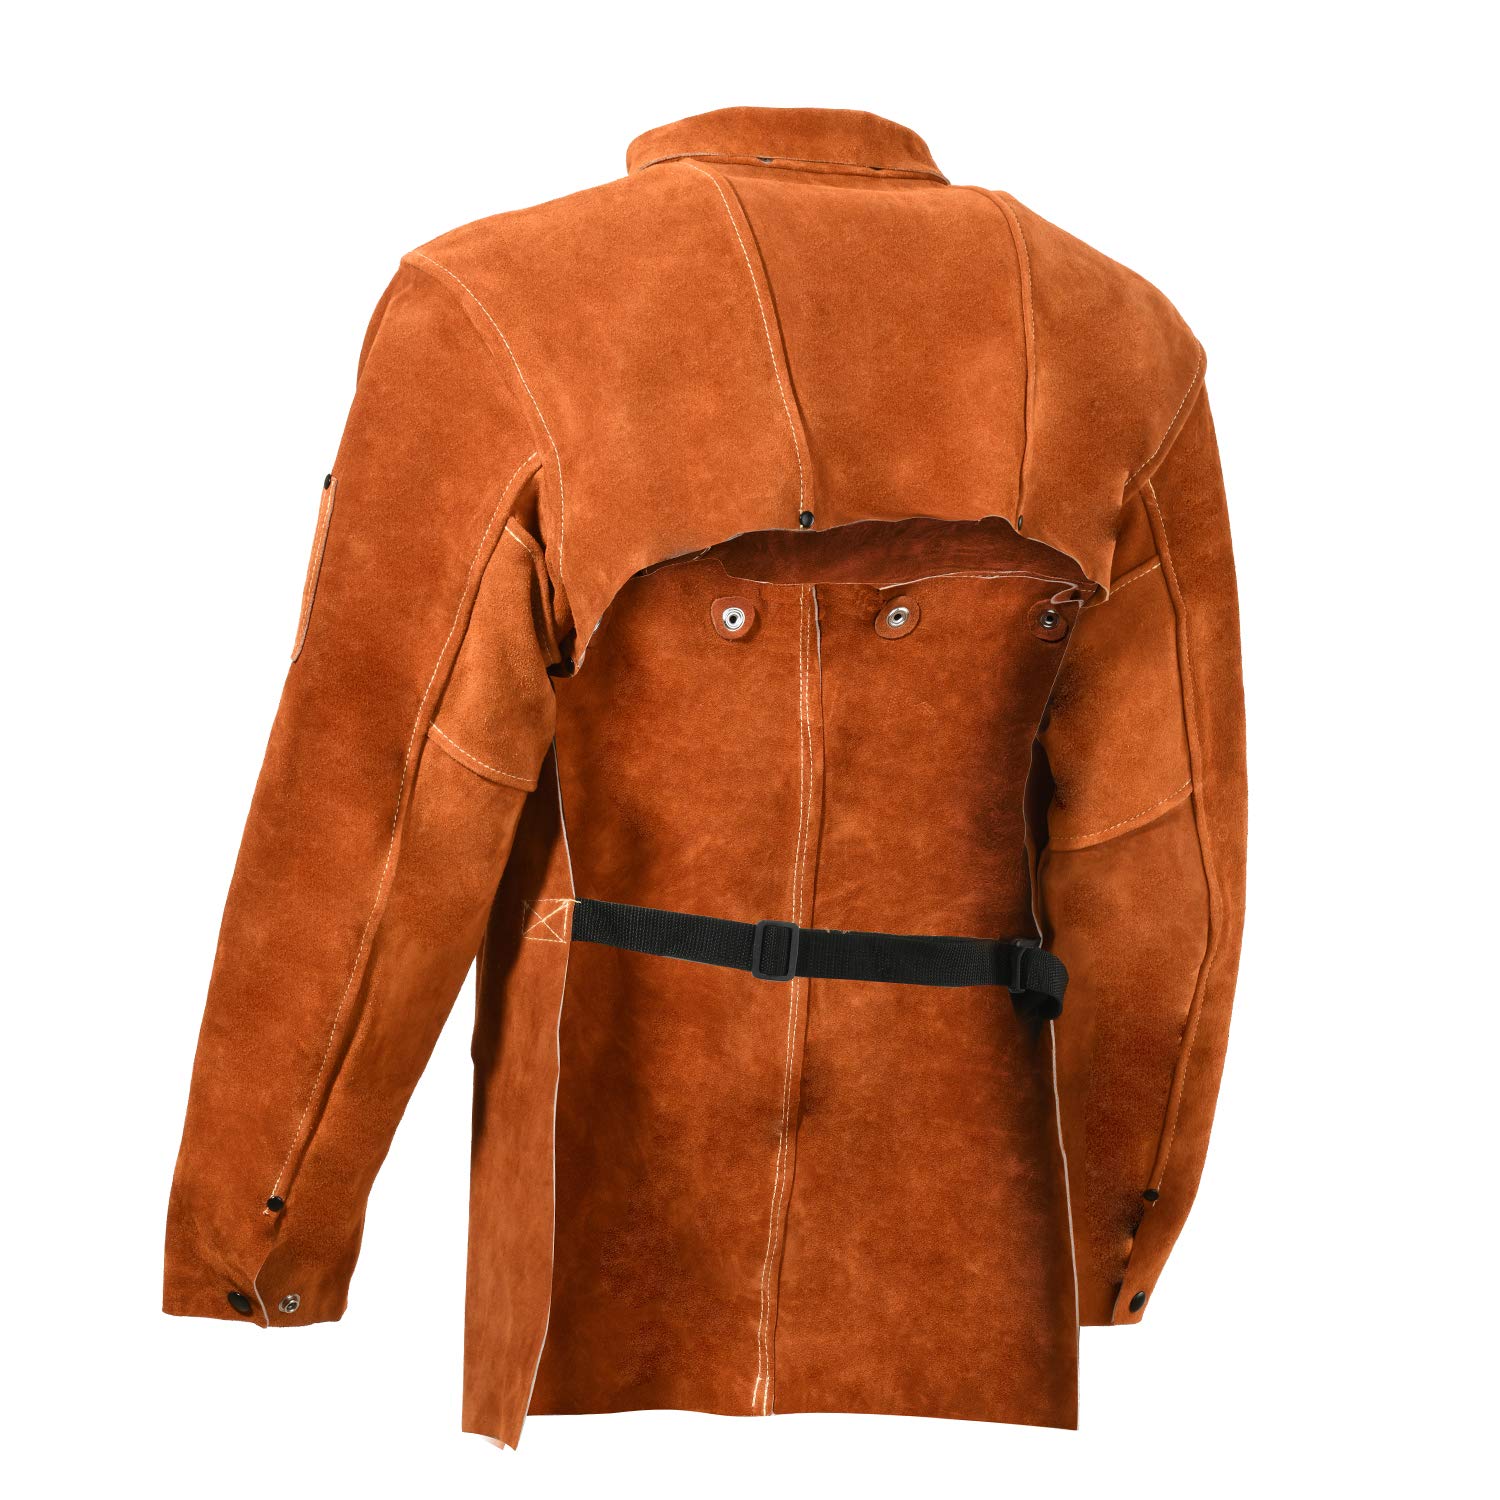 LeaSeek Leather Welding Jacket - Heavy Duty Welding Apron with Sleeve (Large)